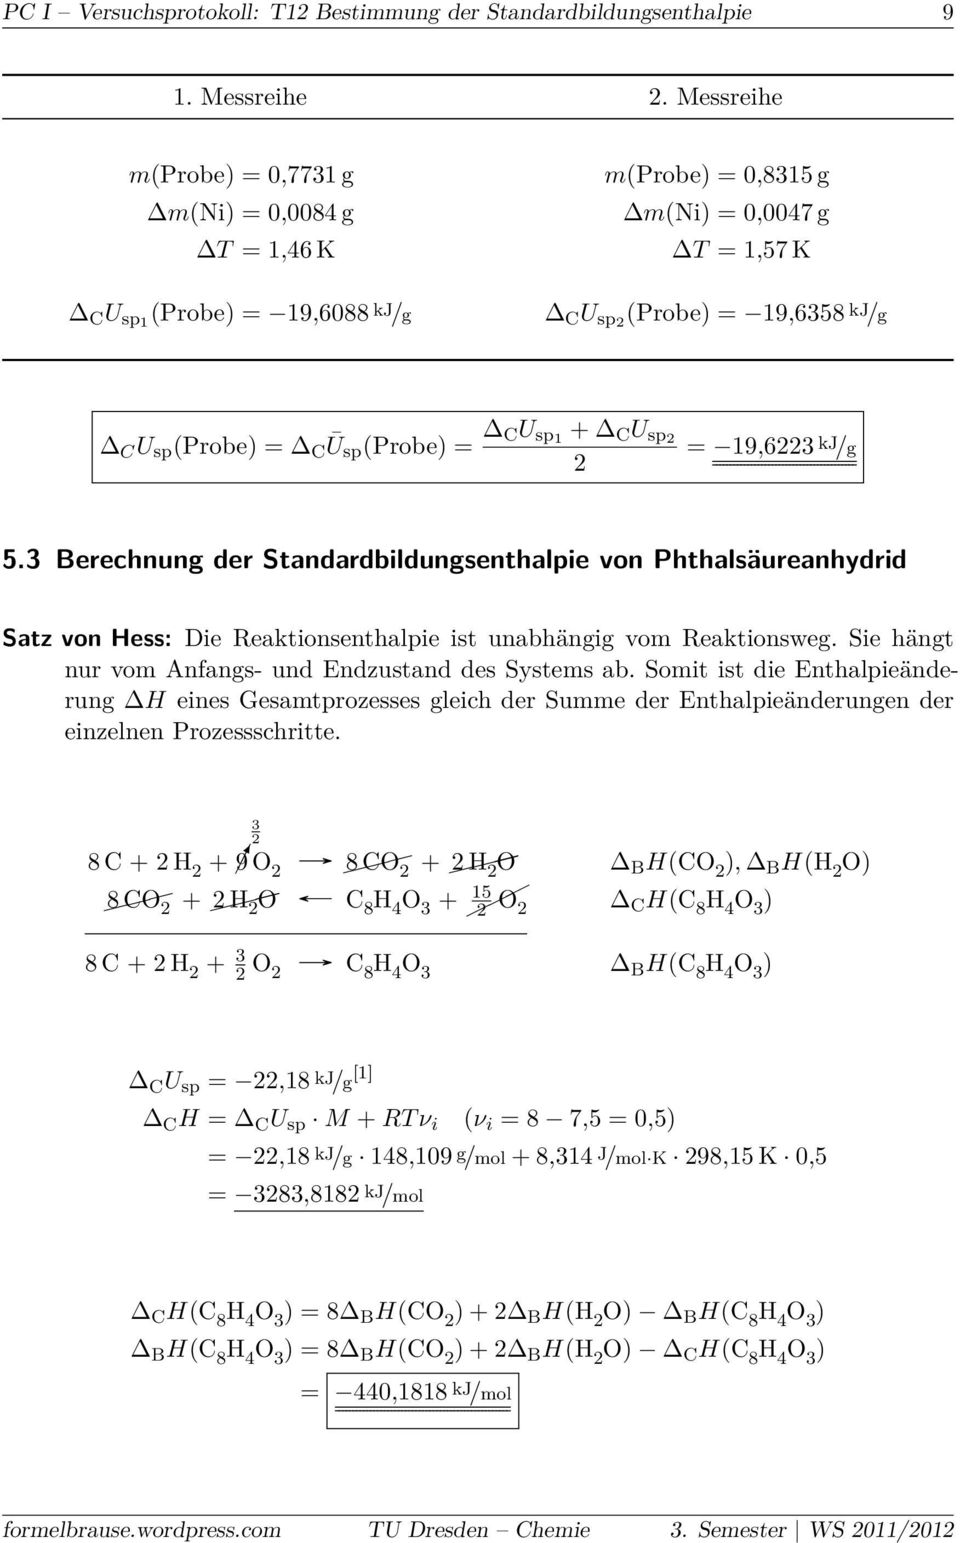 (Probe) = CU sp1 + C U sp2 2 = 19,6223 kj /g 5.3 Berechnung der Standardbildungsenthalpie von Phthalsäureanhydrid Satz von Hess: Die Reaktionsenthalpie ist unabhängig vom Reaktionsweg.